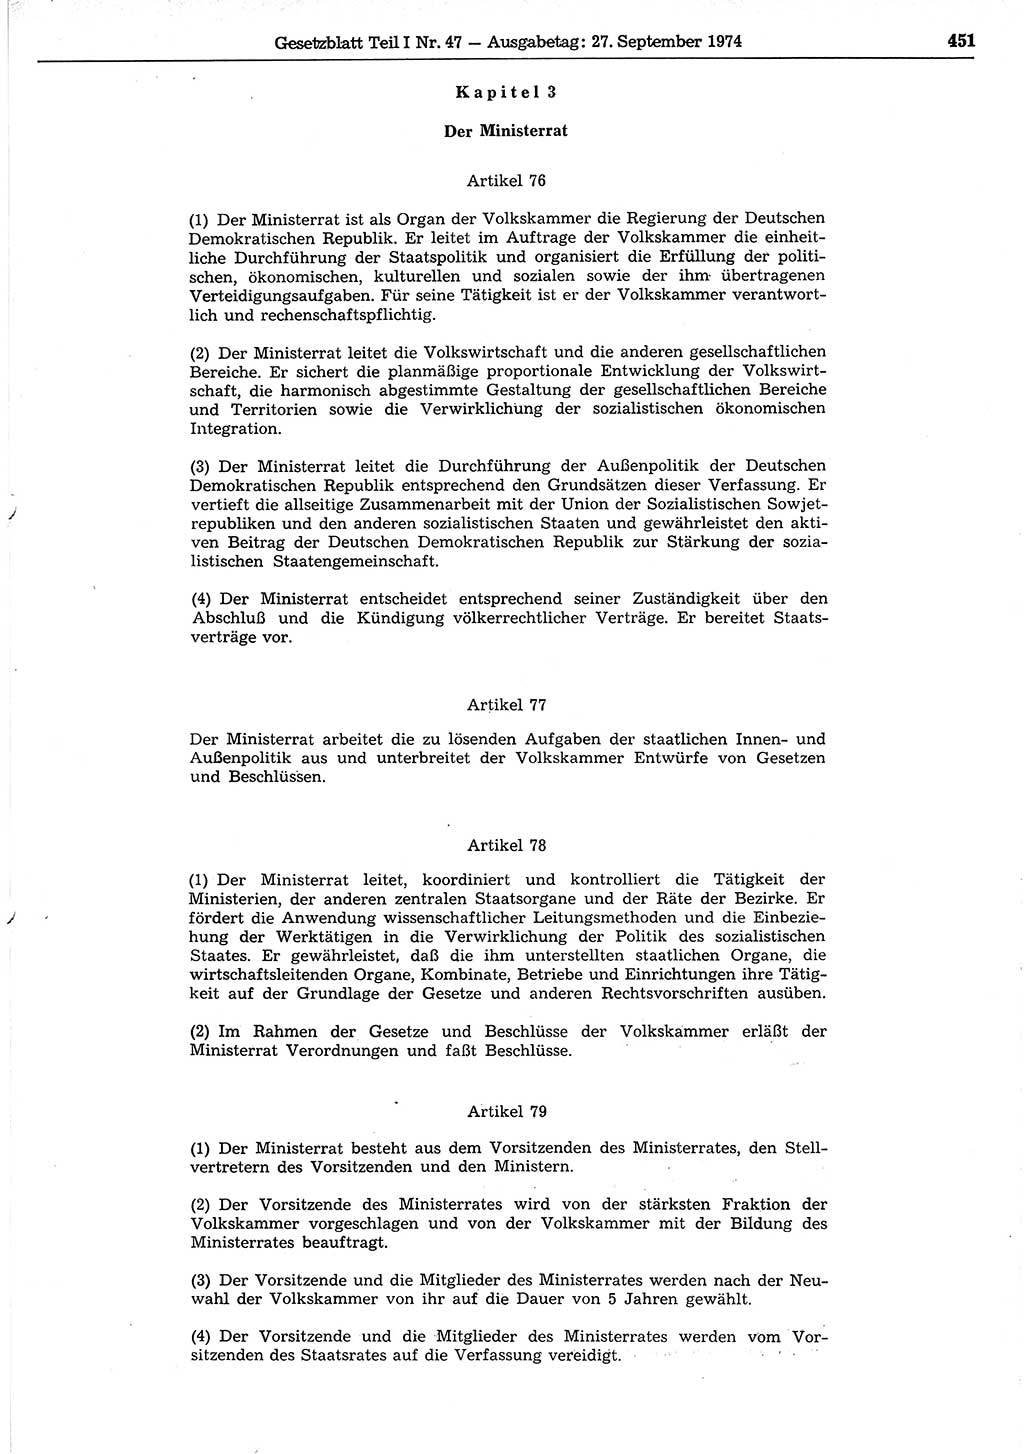 Gesetzblatt (GBl.) der Deutschen Demokratischen Republik (DDR) Teil Ⅰ 1974, Seite 451 (GBl. DDR Ⅰ 1974, S. 451)